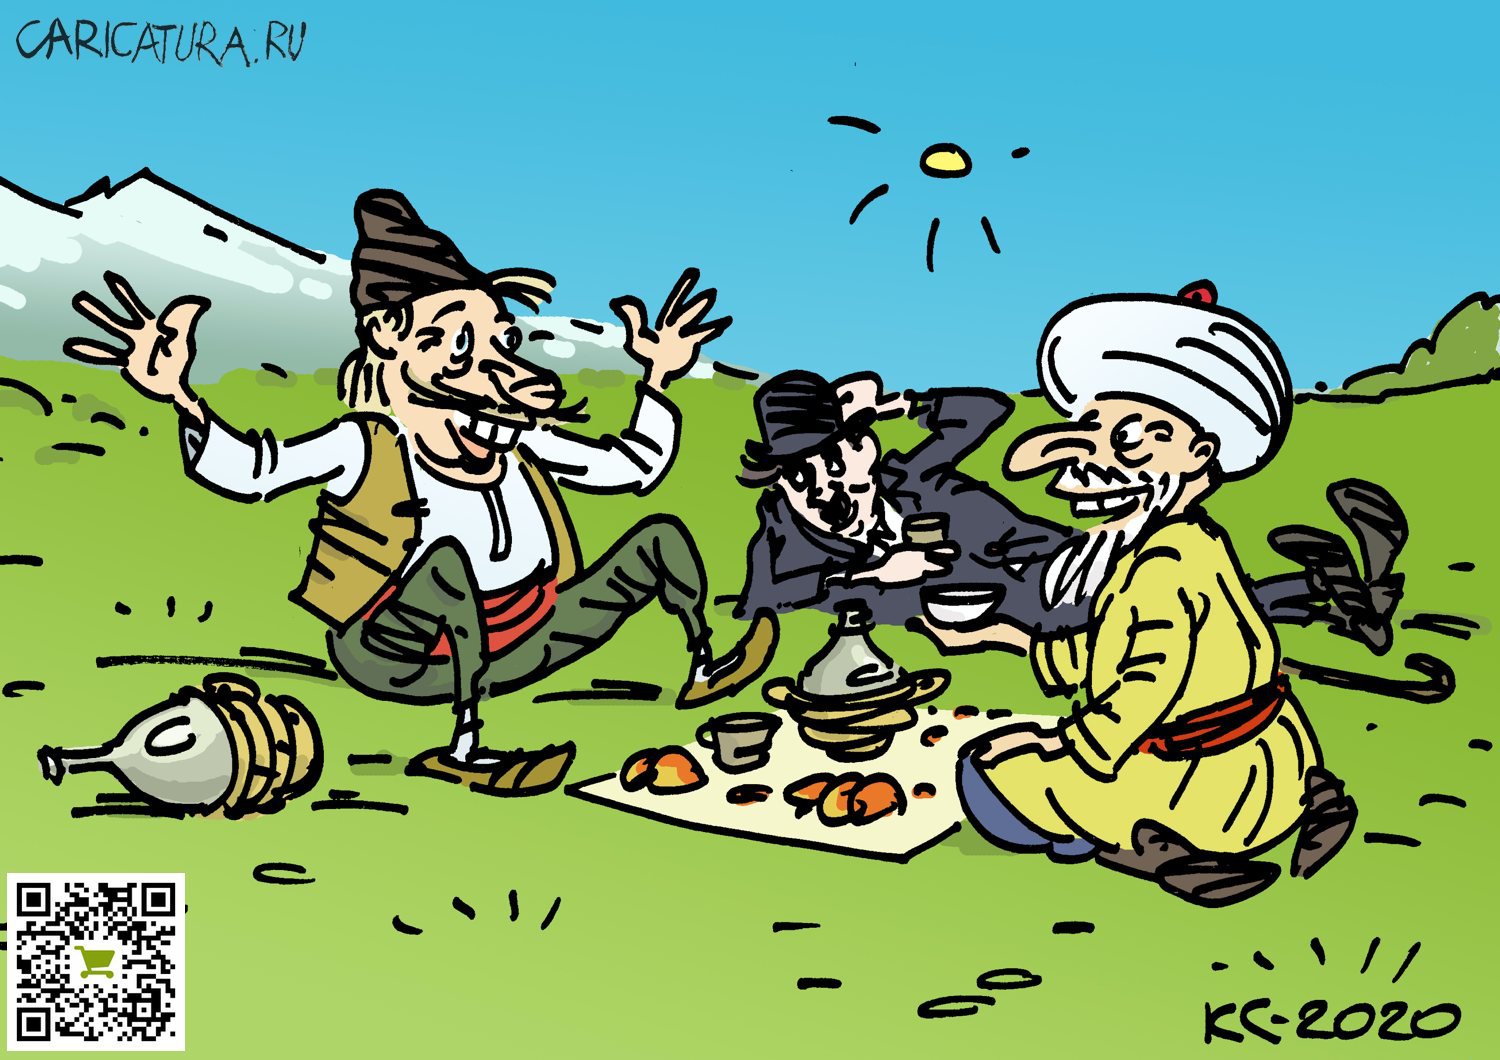 Карикатура "Весельчаки на привале", Вячеслав Капрельянц